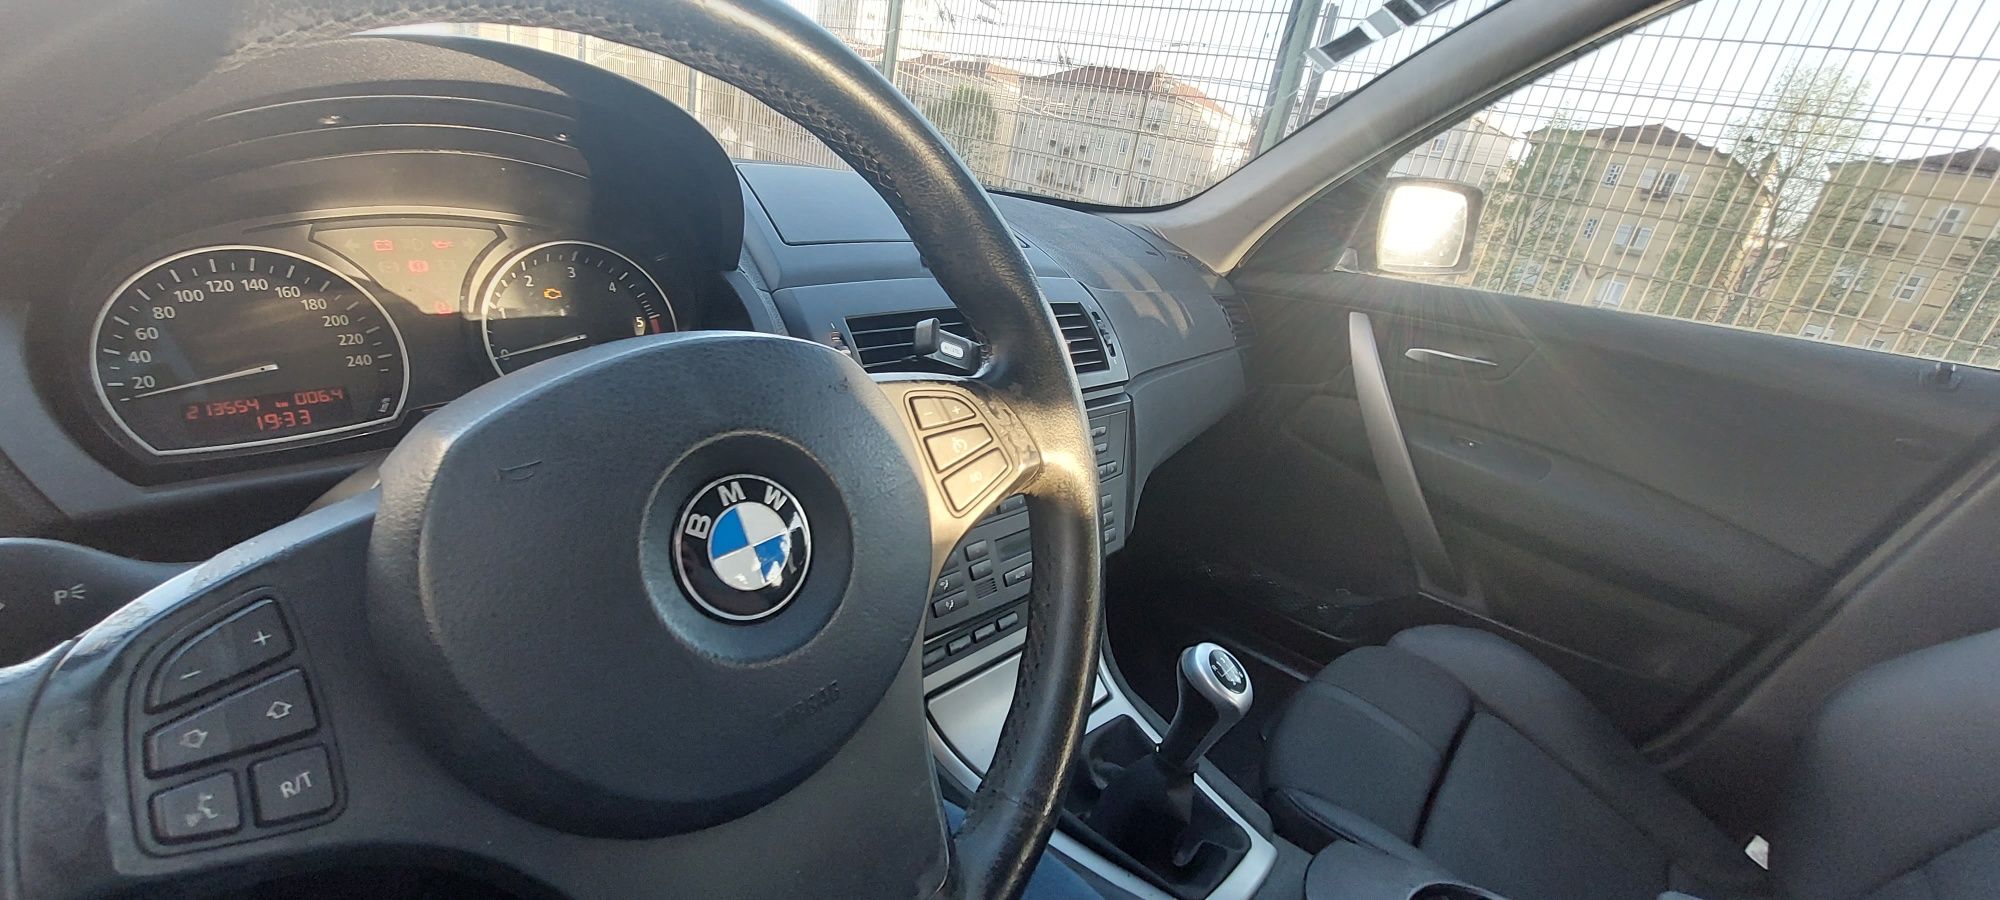 BMW X3 2.0 D 150 CV